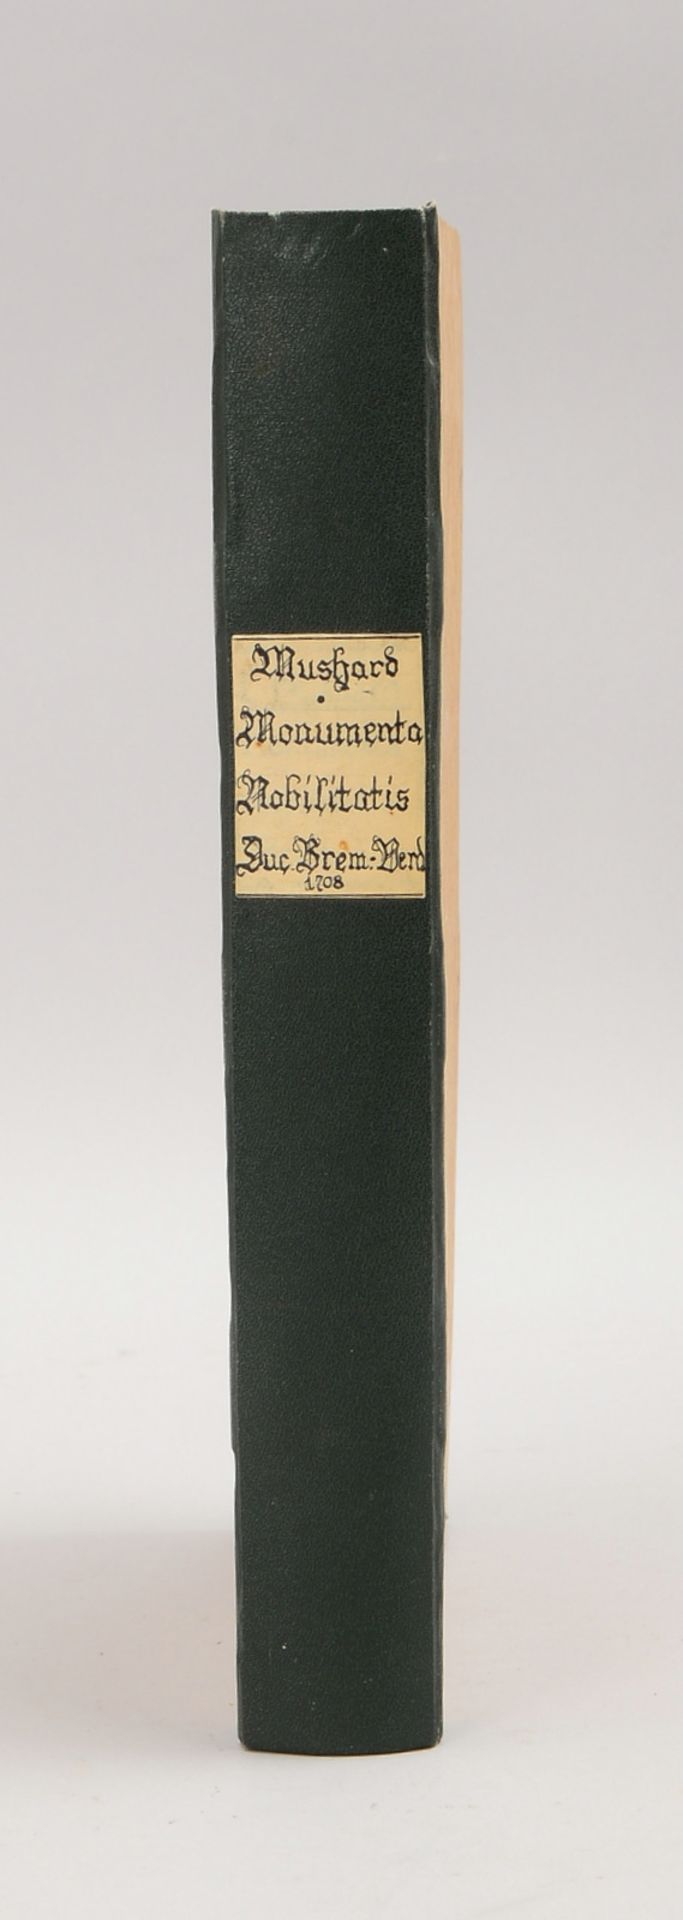 Mushard, Luneberg, &#039;Monumenta nobilitatis antiquae familiarum illustr. ...&#039; (1708) - Image 2 of 4